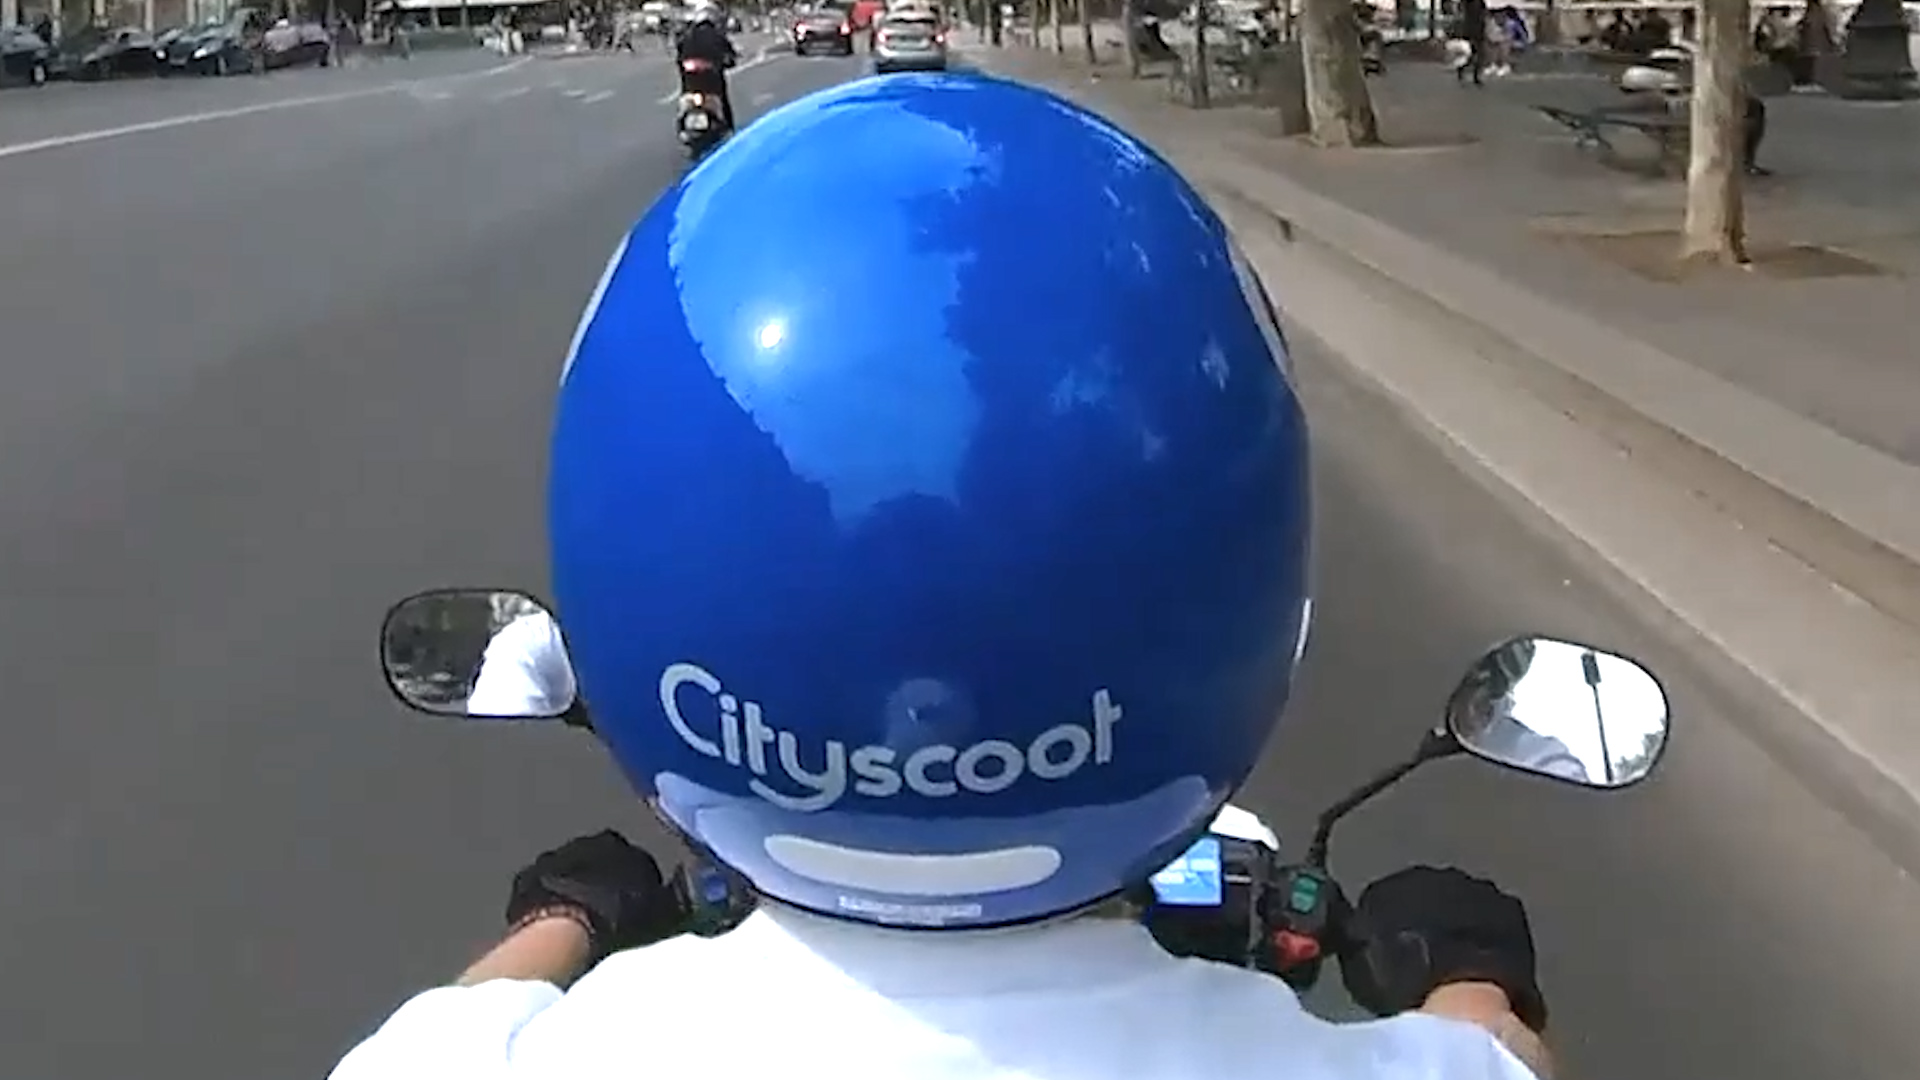 Vidéo Cityscoot produite par Atelier B